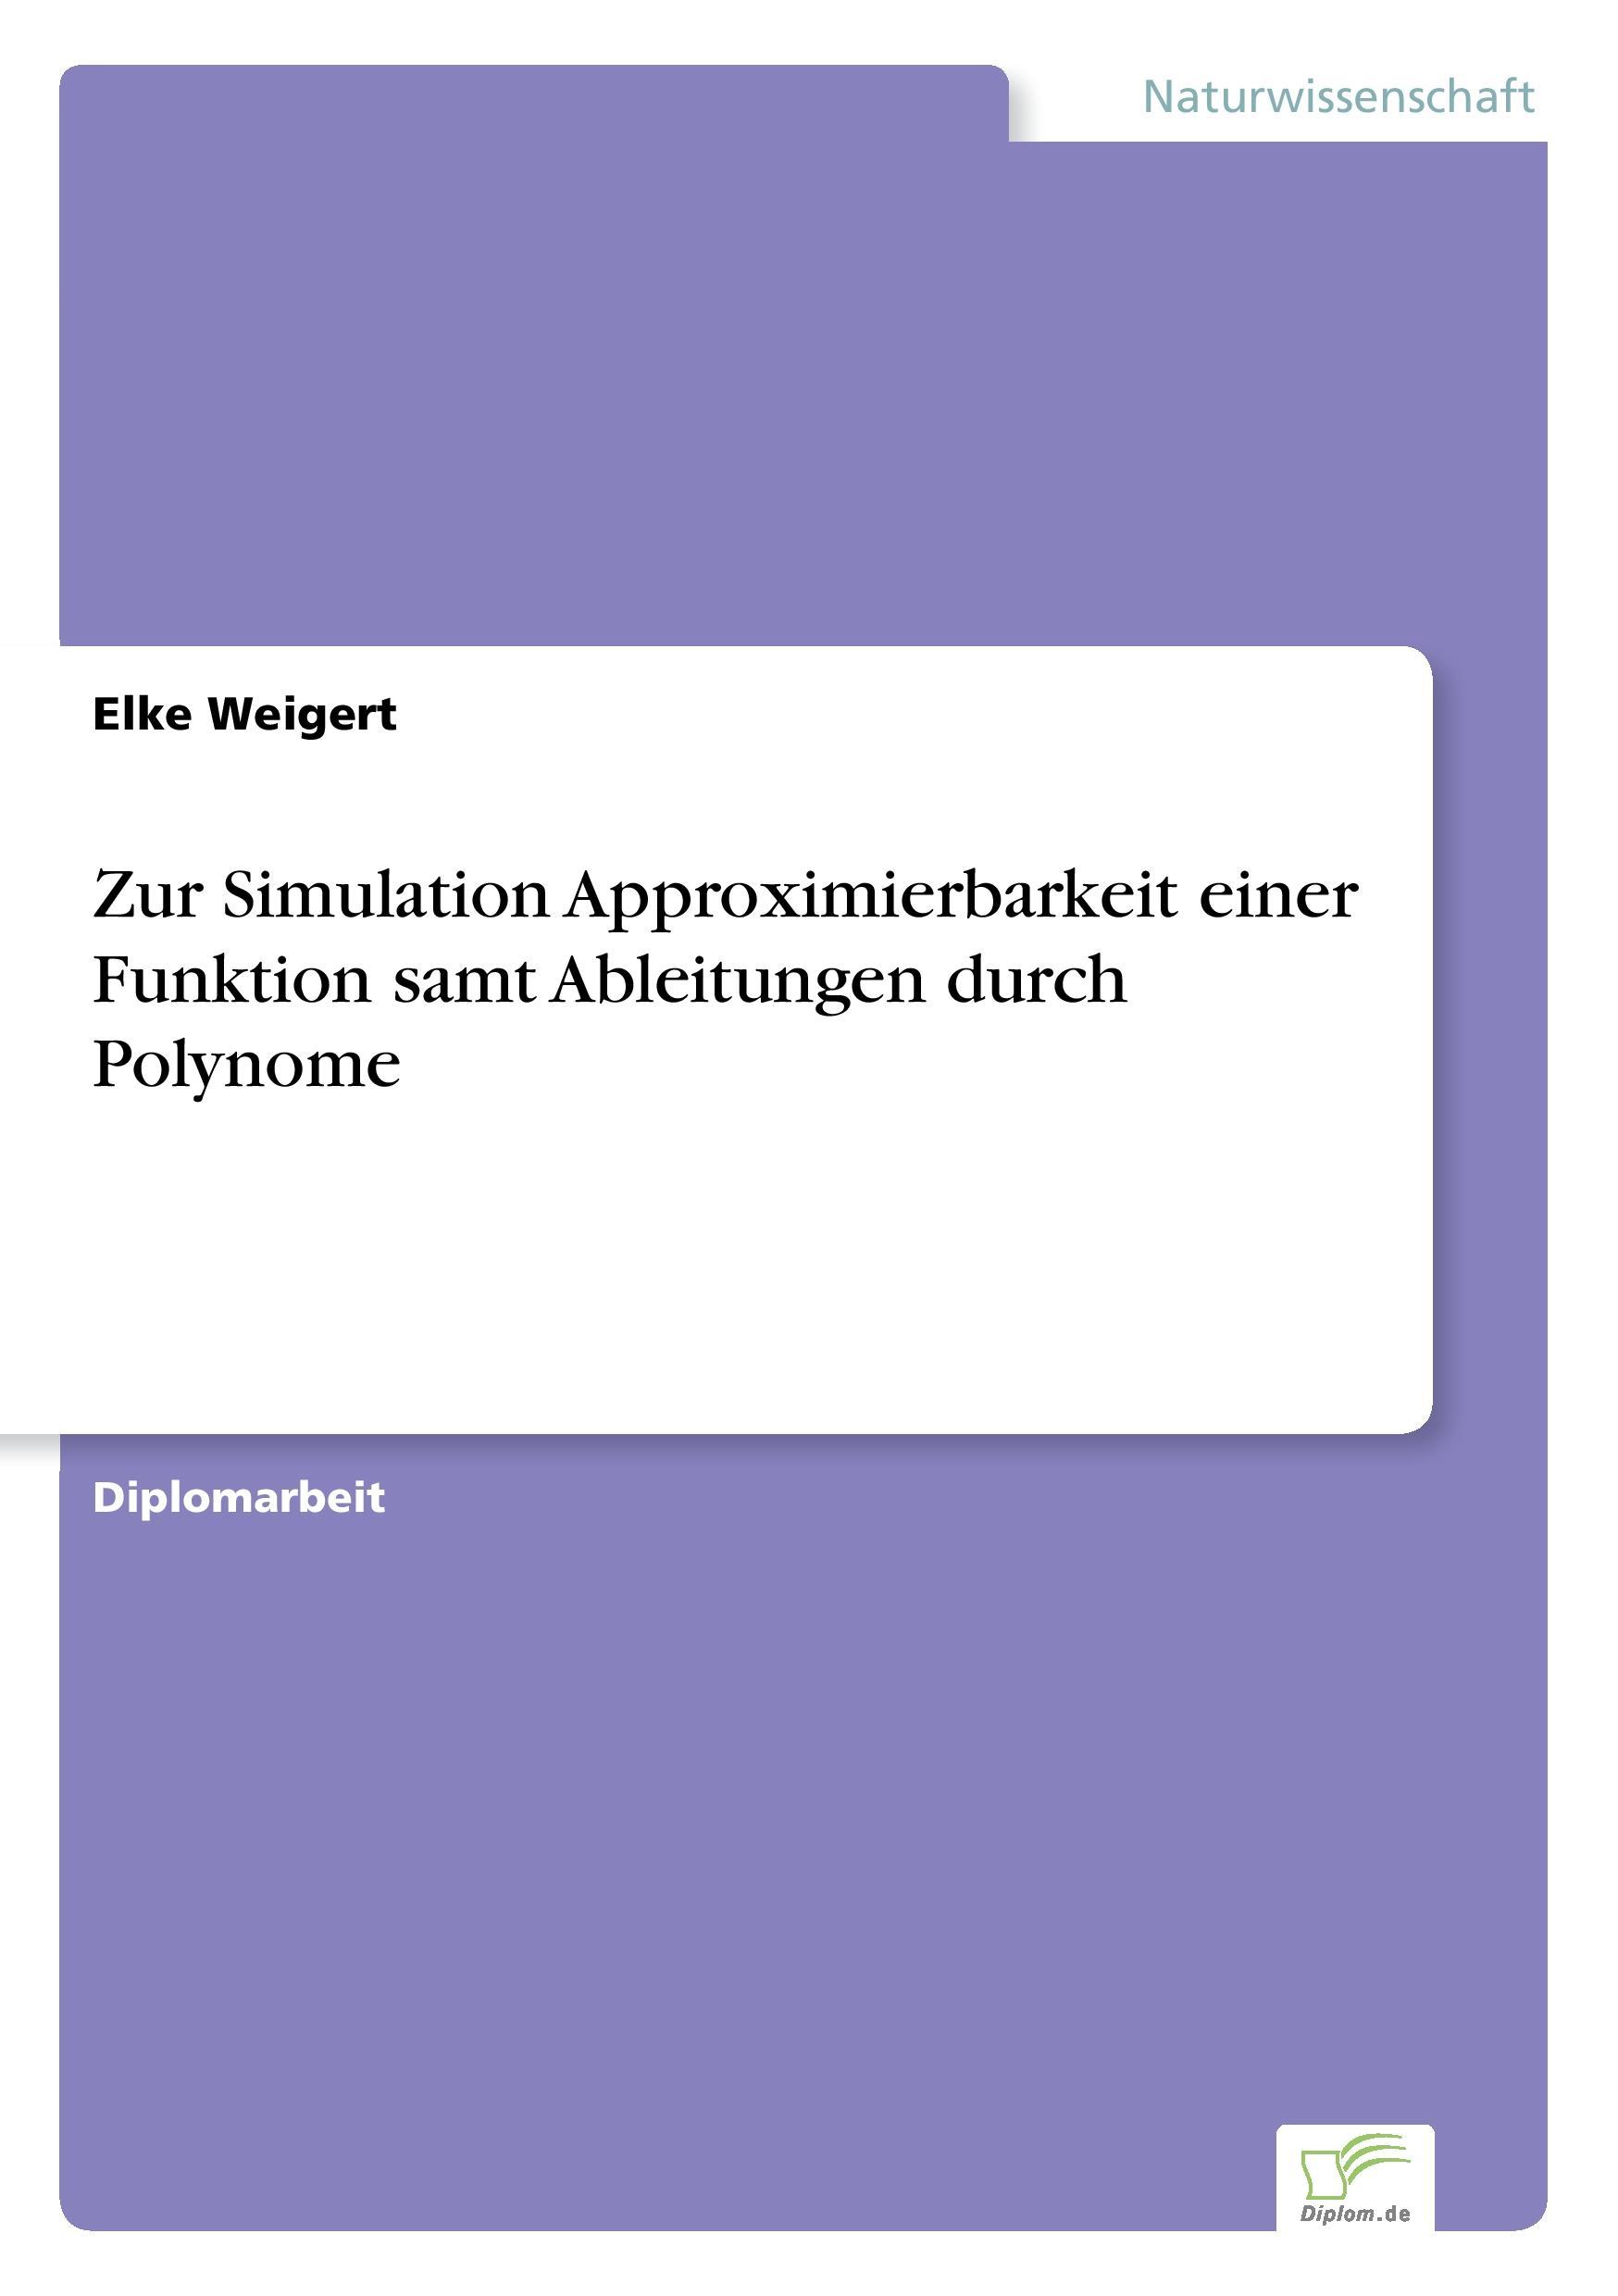 Zur Simulation Approximierbarkeit einer Funktion samt Ableitungen durch Polynome - Weigert, Elke